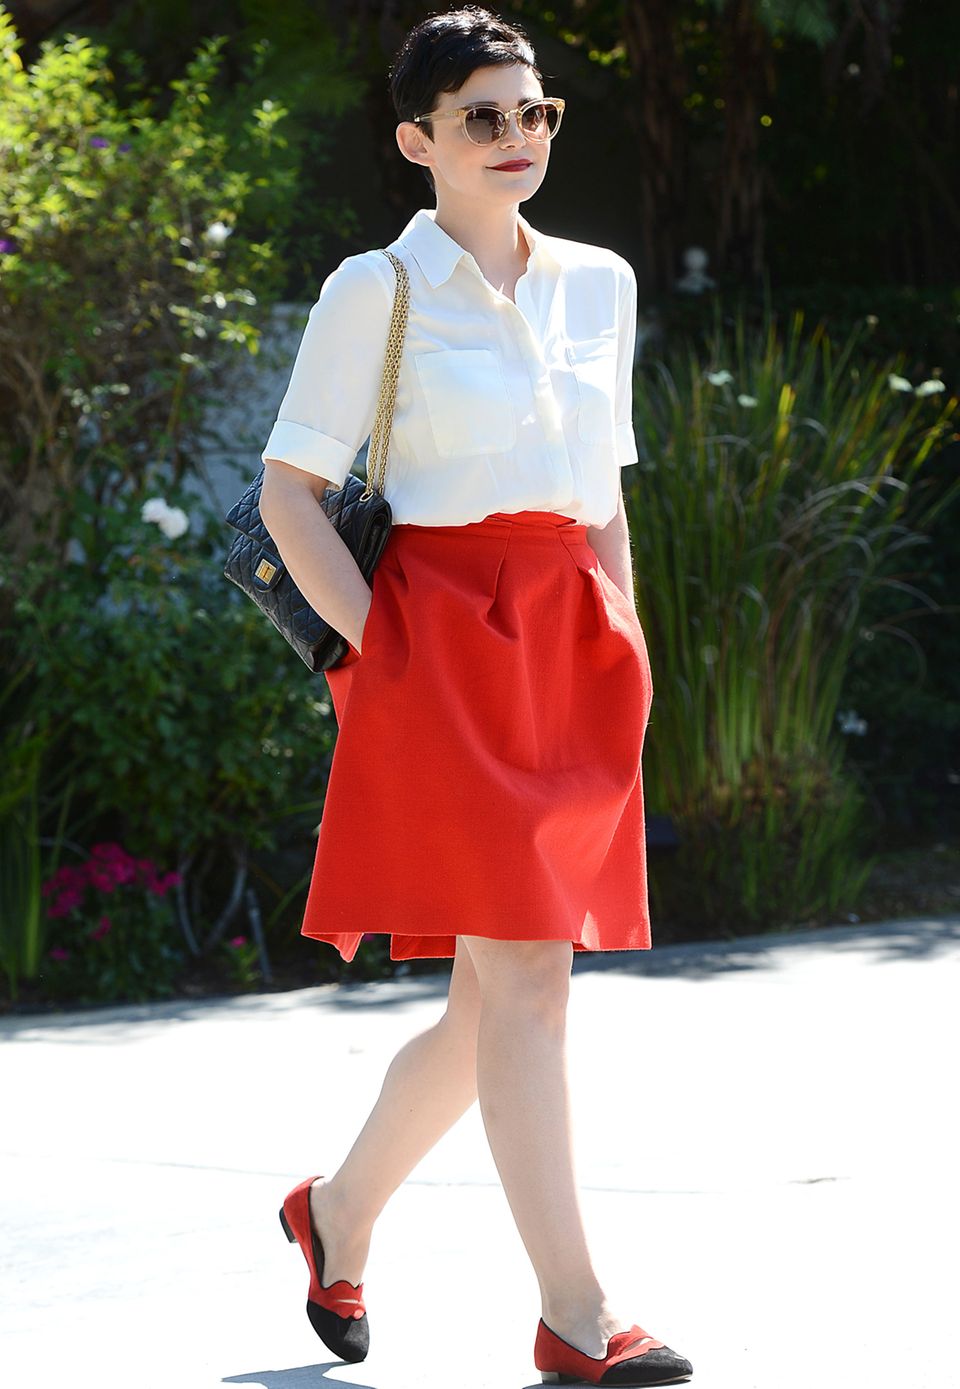 Für eine Gartenparty in Hollywood greift Ginnifer Goodwin auf eine schlichte weiße Bluse, einen roten, ausgestellten Rock und bequeme Slipper zurück.